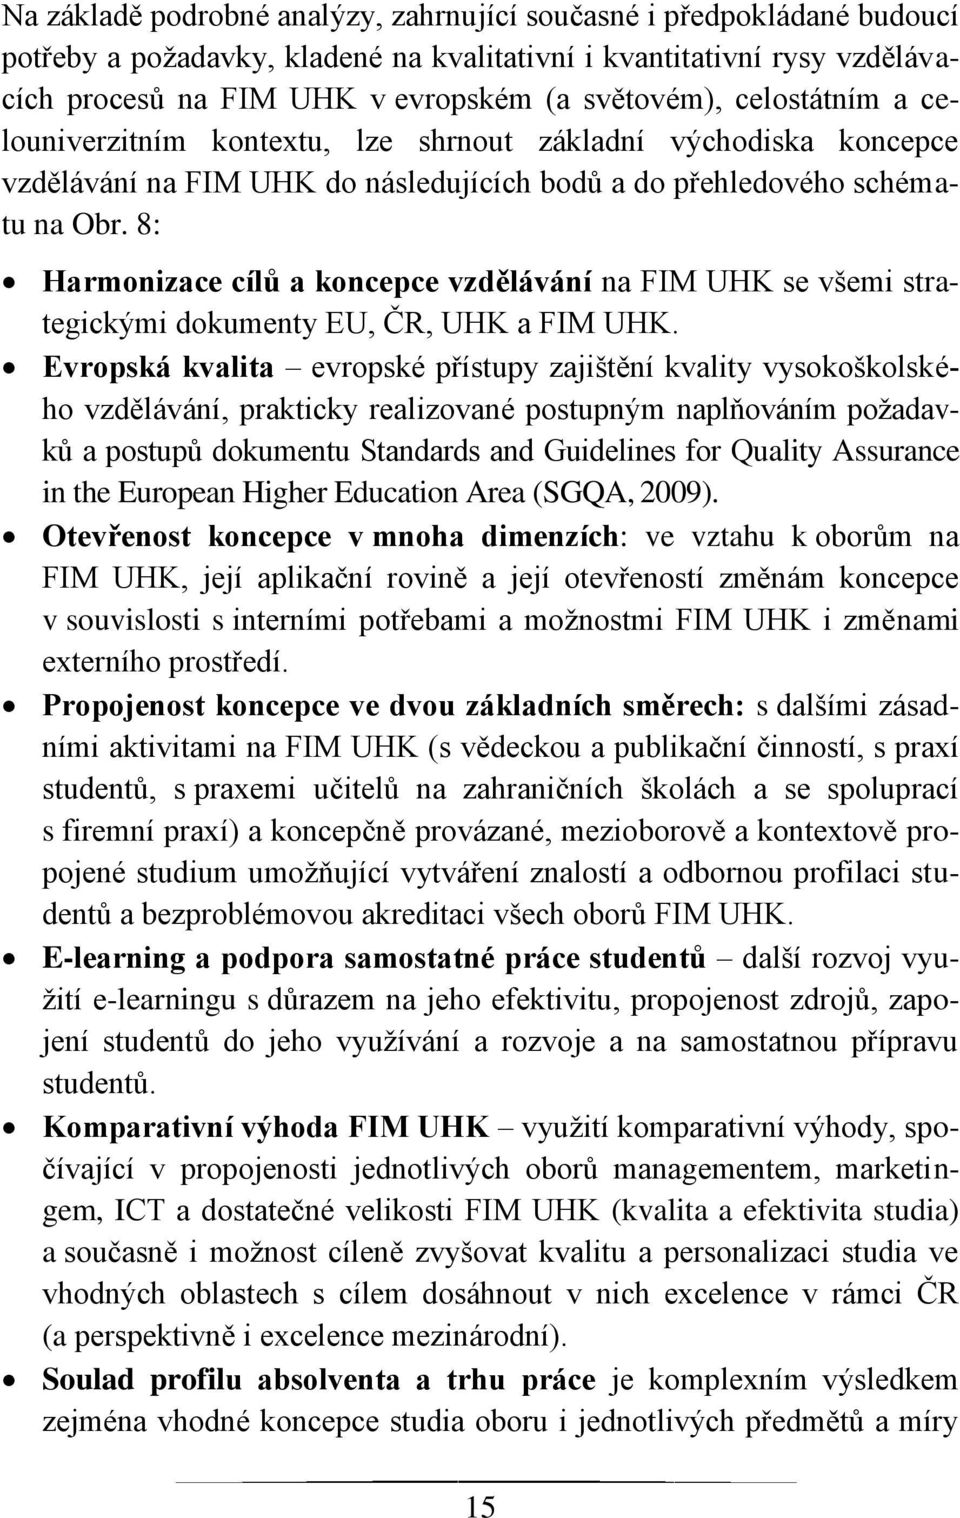 8: Harmonizace cílů a koncepce vzdělávání na FIM UHK se všemi strategickými dokumenty EU, ČR, UHK a FIM UHK.